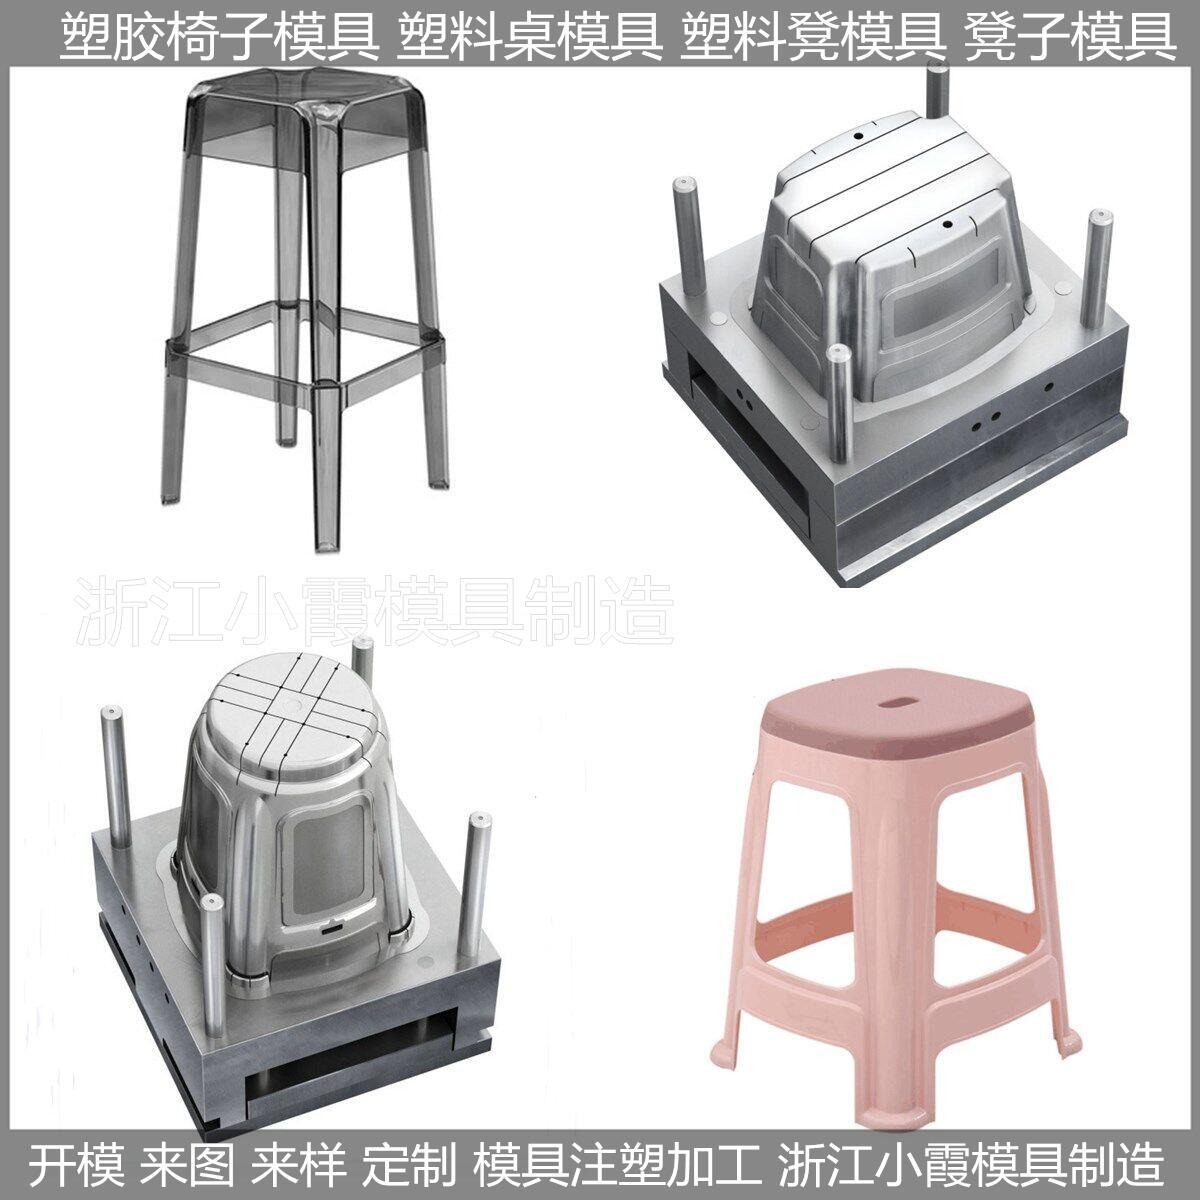 凳子塑料模具	凳子模具	凳子塑胶模具	凳子注塑模具  /注塑成型加工